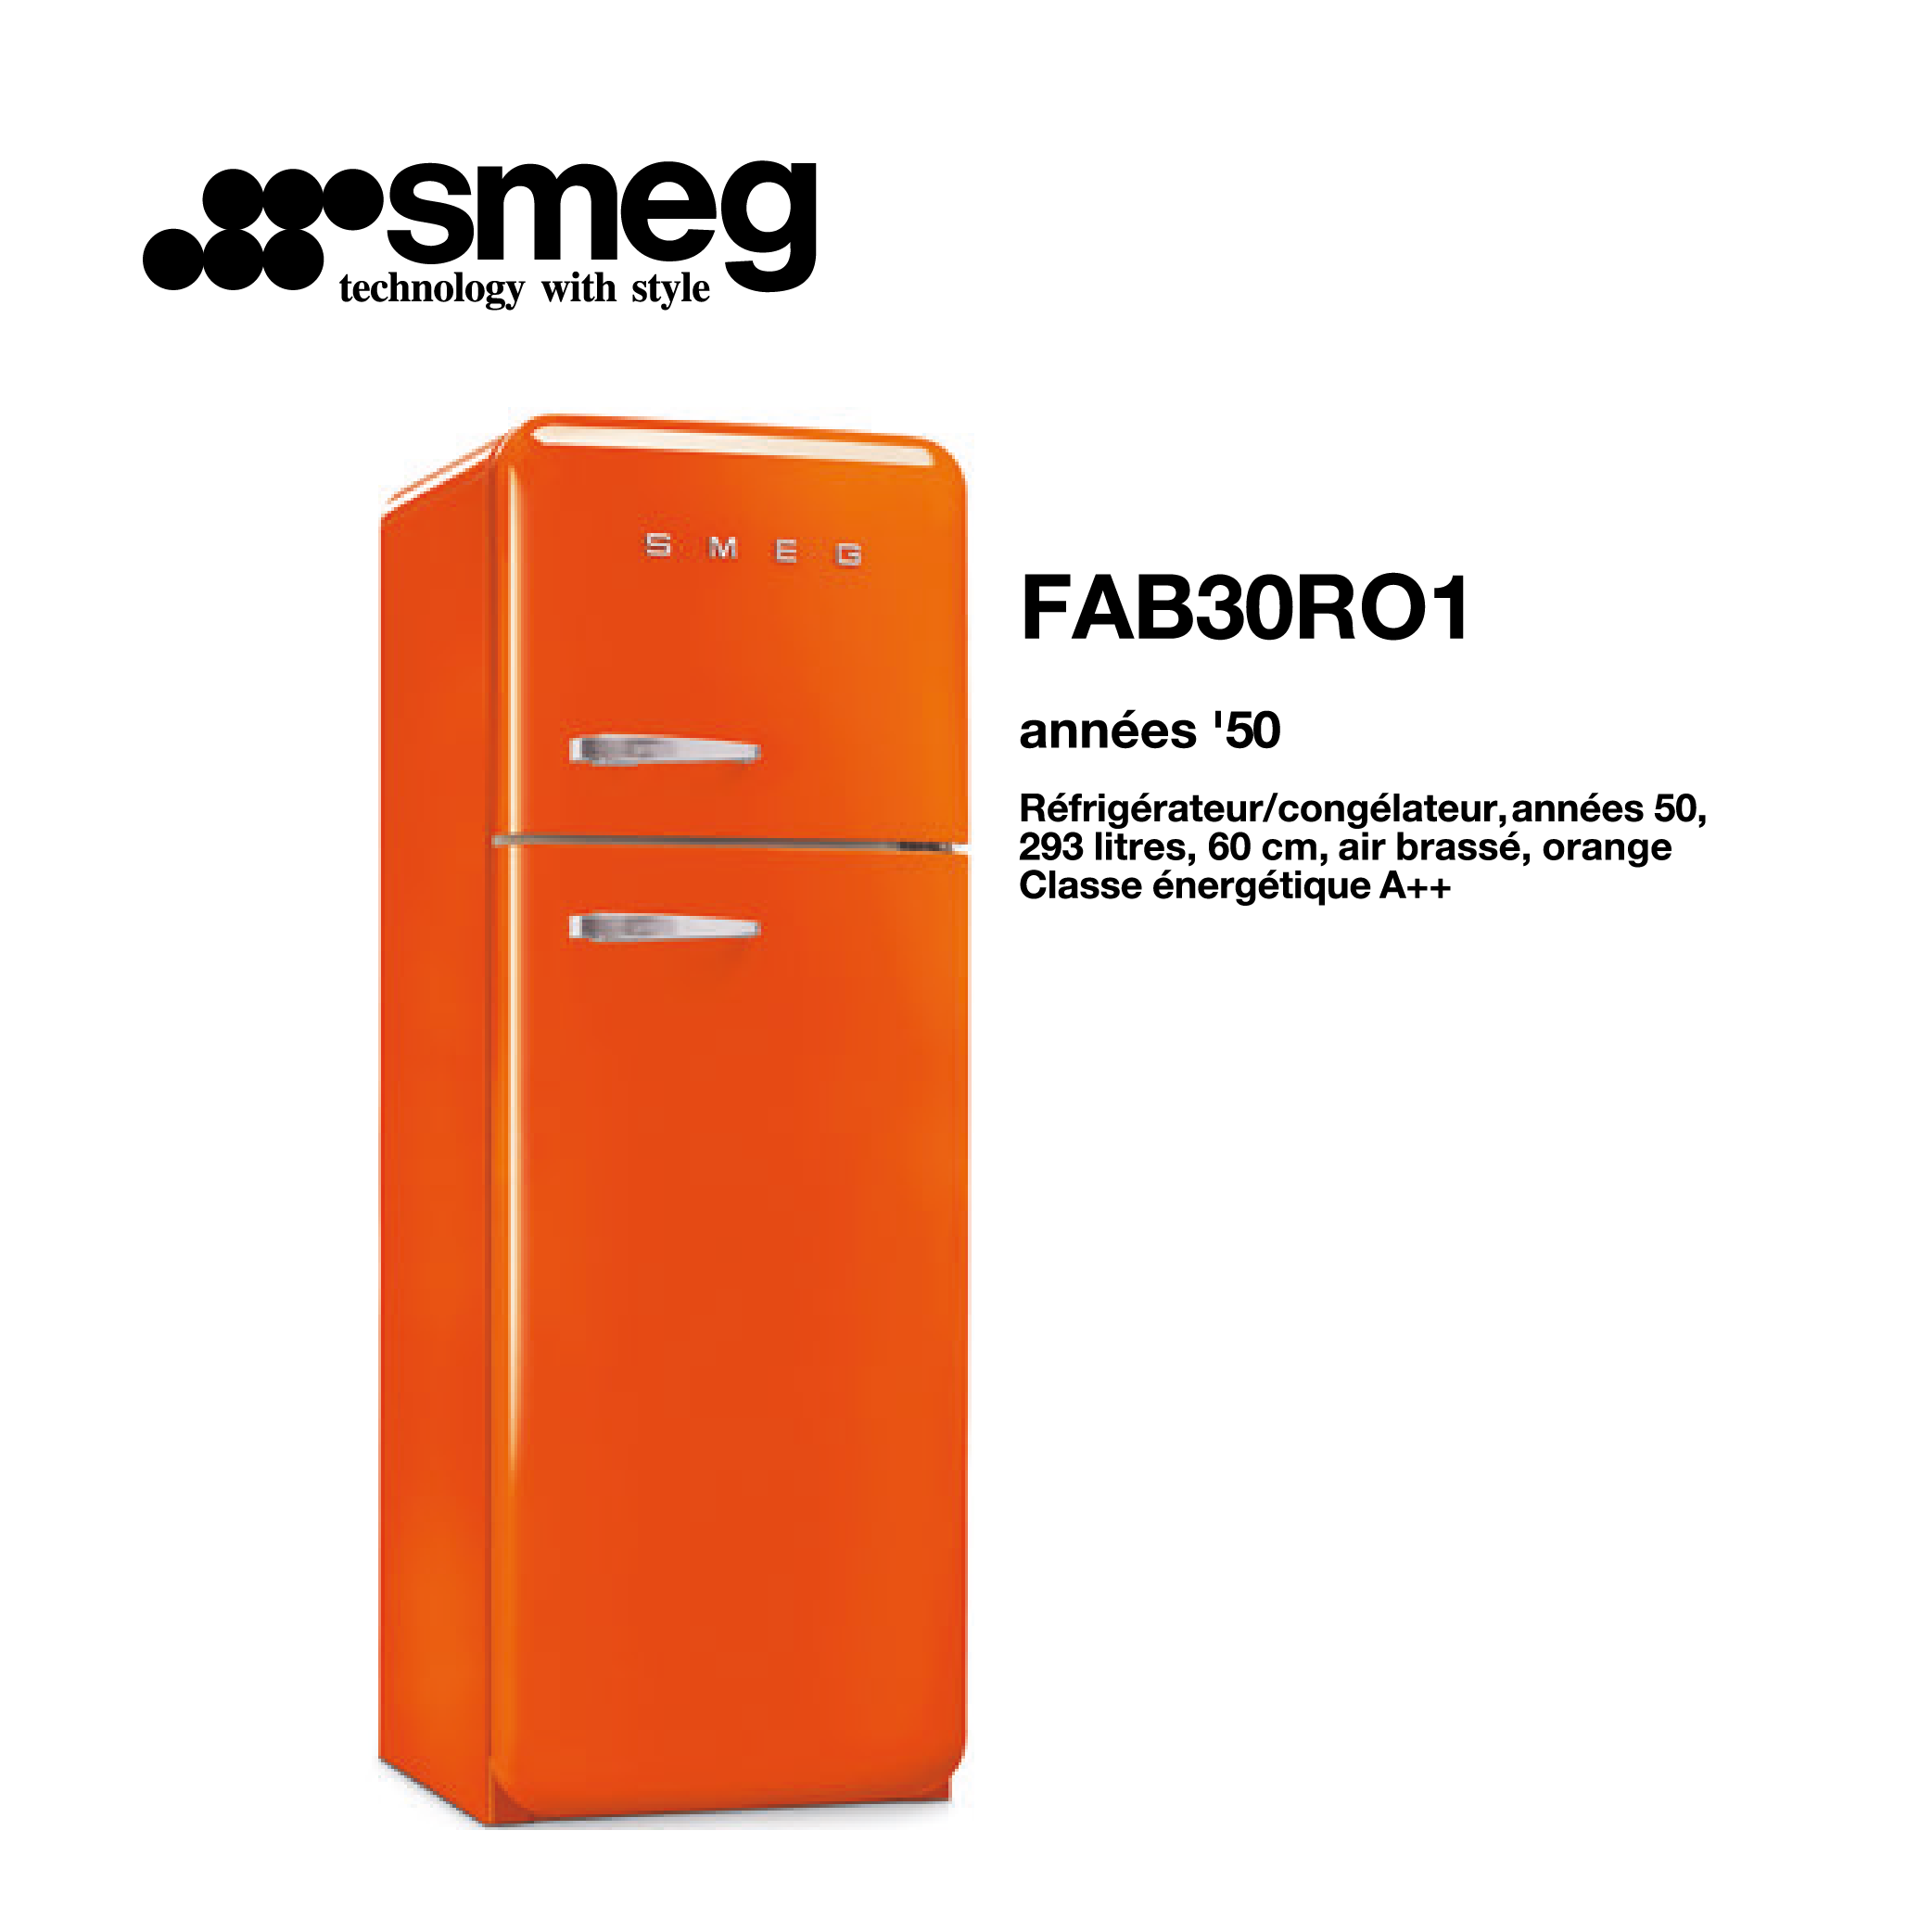 Réfrigérateur congélateur smeg Air brassé 293 Litre 60cm couleur Orange 2 portes style années 50 FAB30RO1